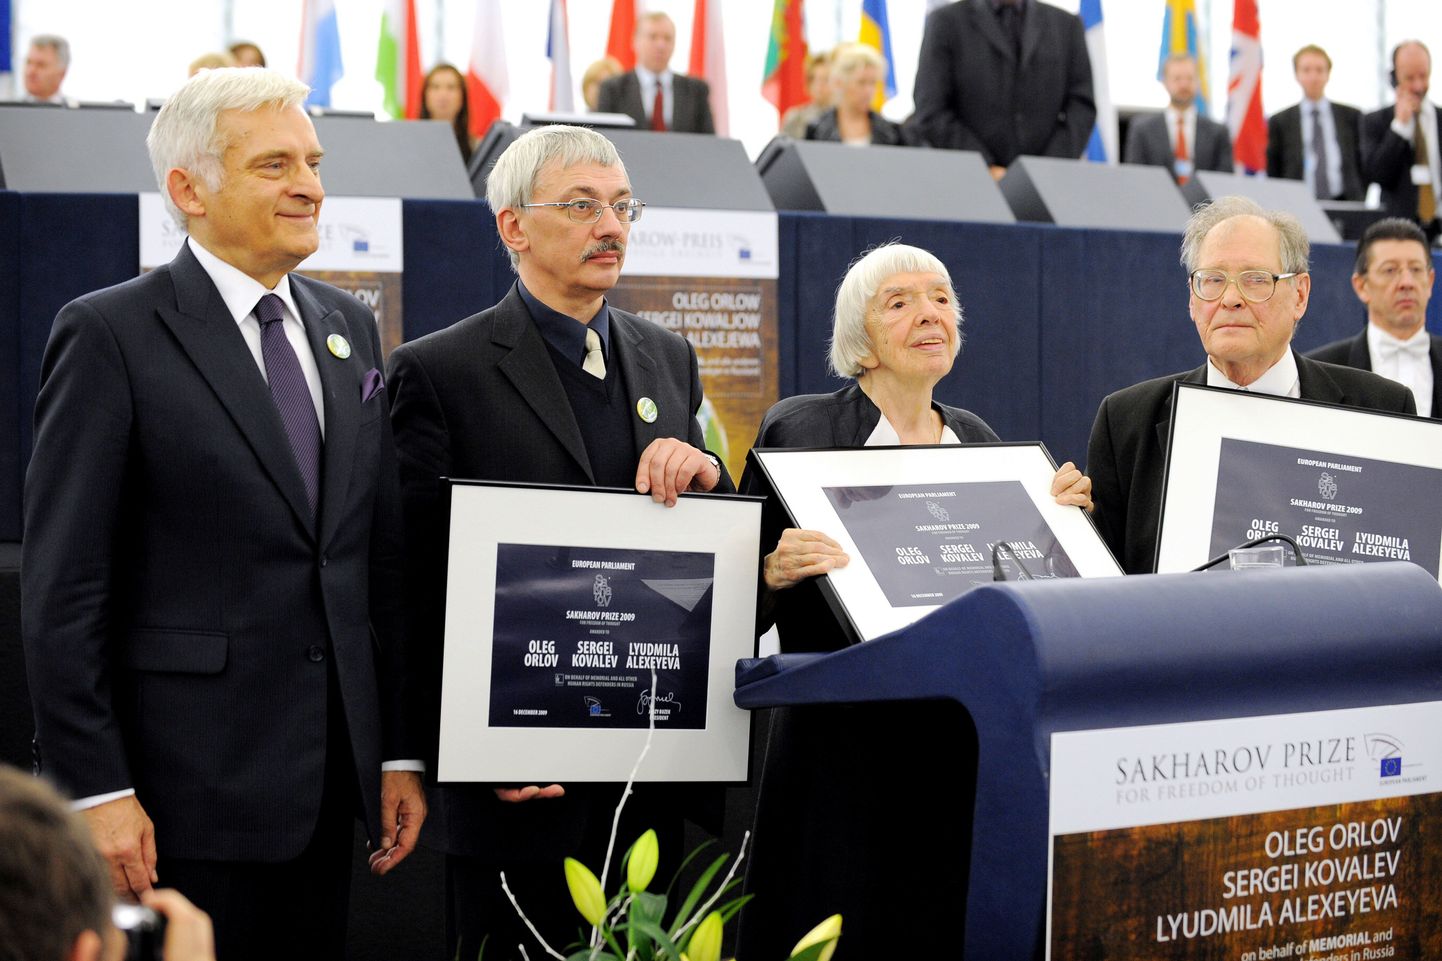 Tänavuse Sahharovi preemia laureaadid Oleg Orlov (vasakult teine), Ljudmilla Aleksejeva (paremalt teine) ja Sergei Kovaljov (paremal) poseerivad koos Euroopa Parlamendi president Jerzy Buzekiga (vasakul).